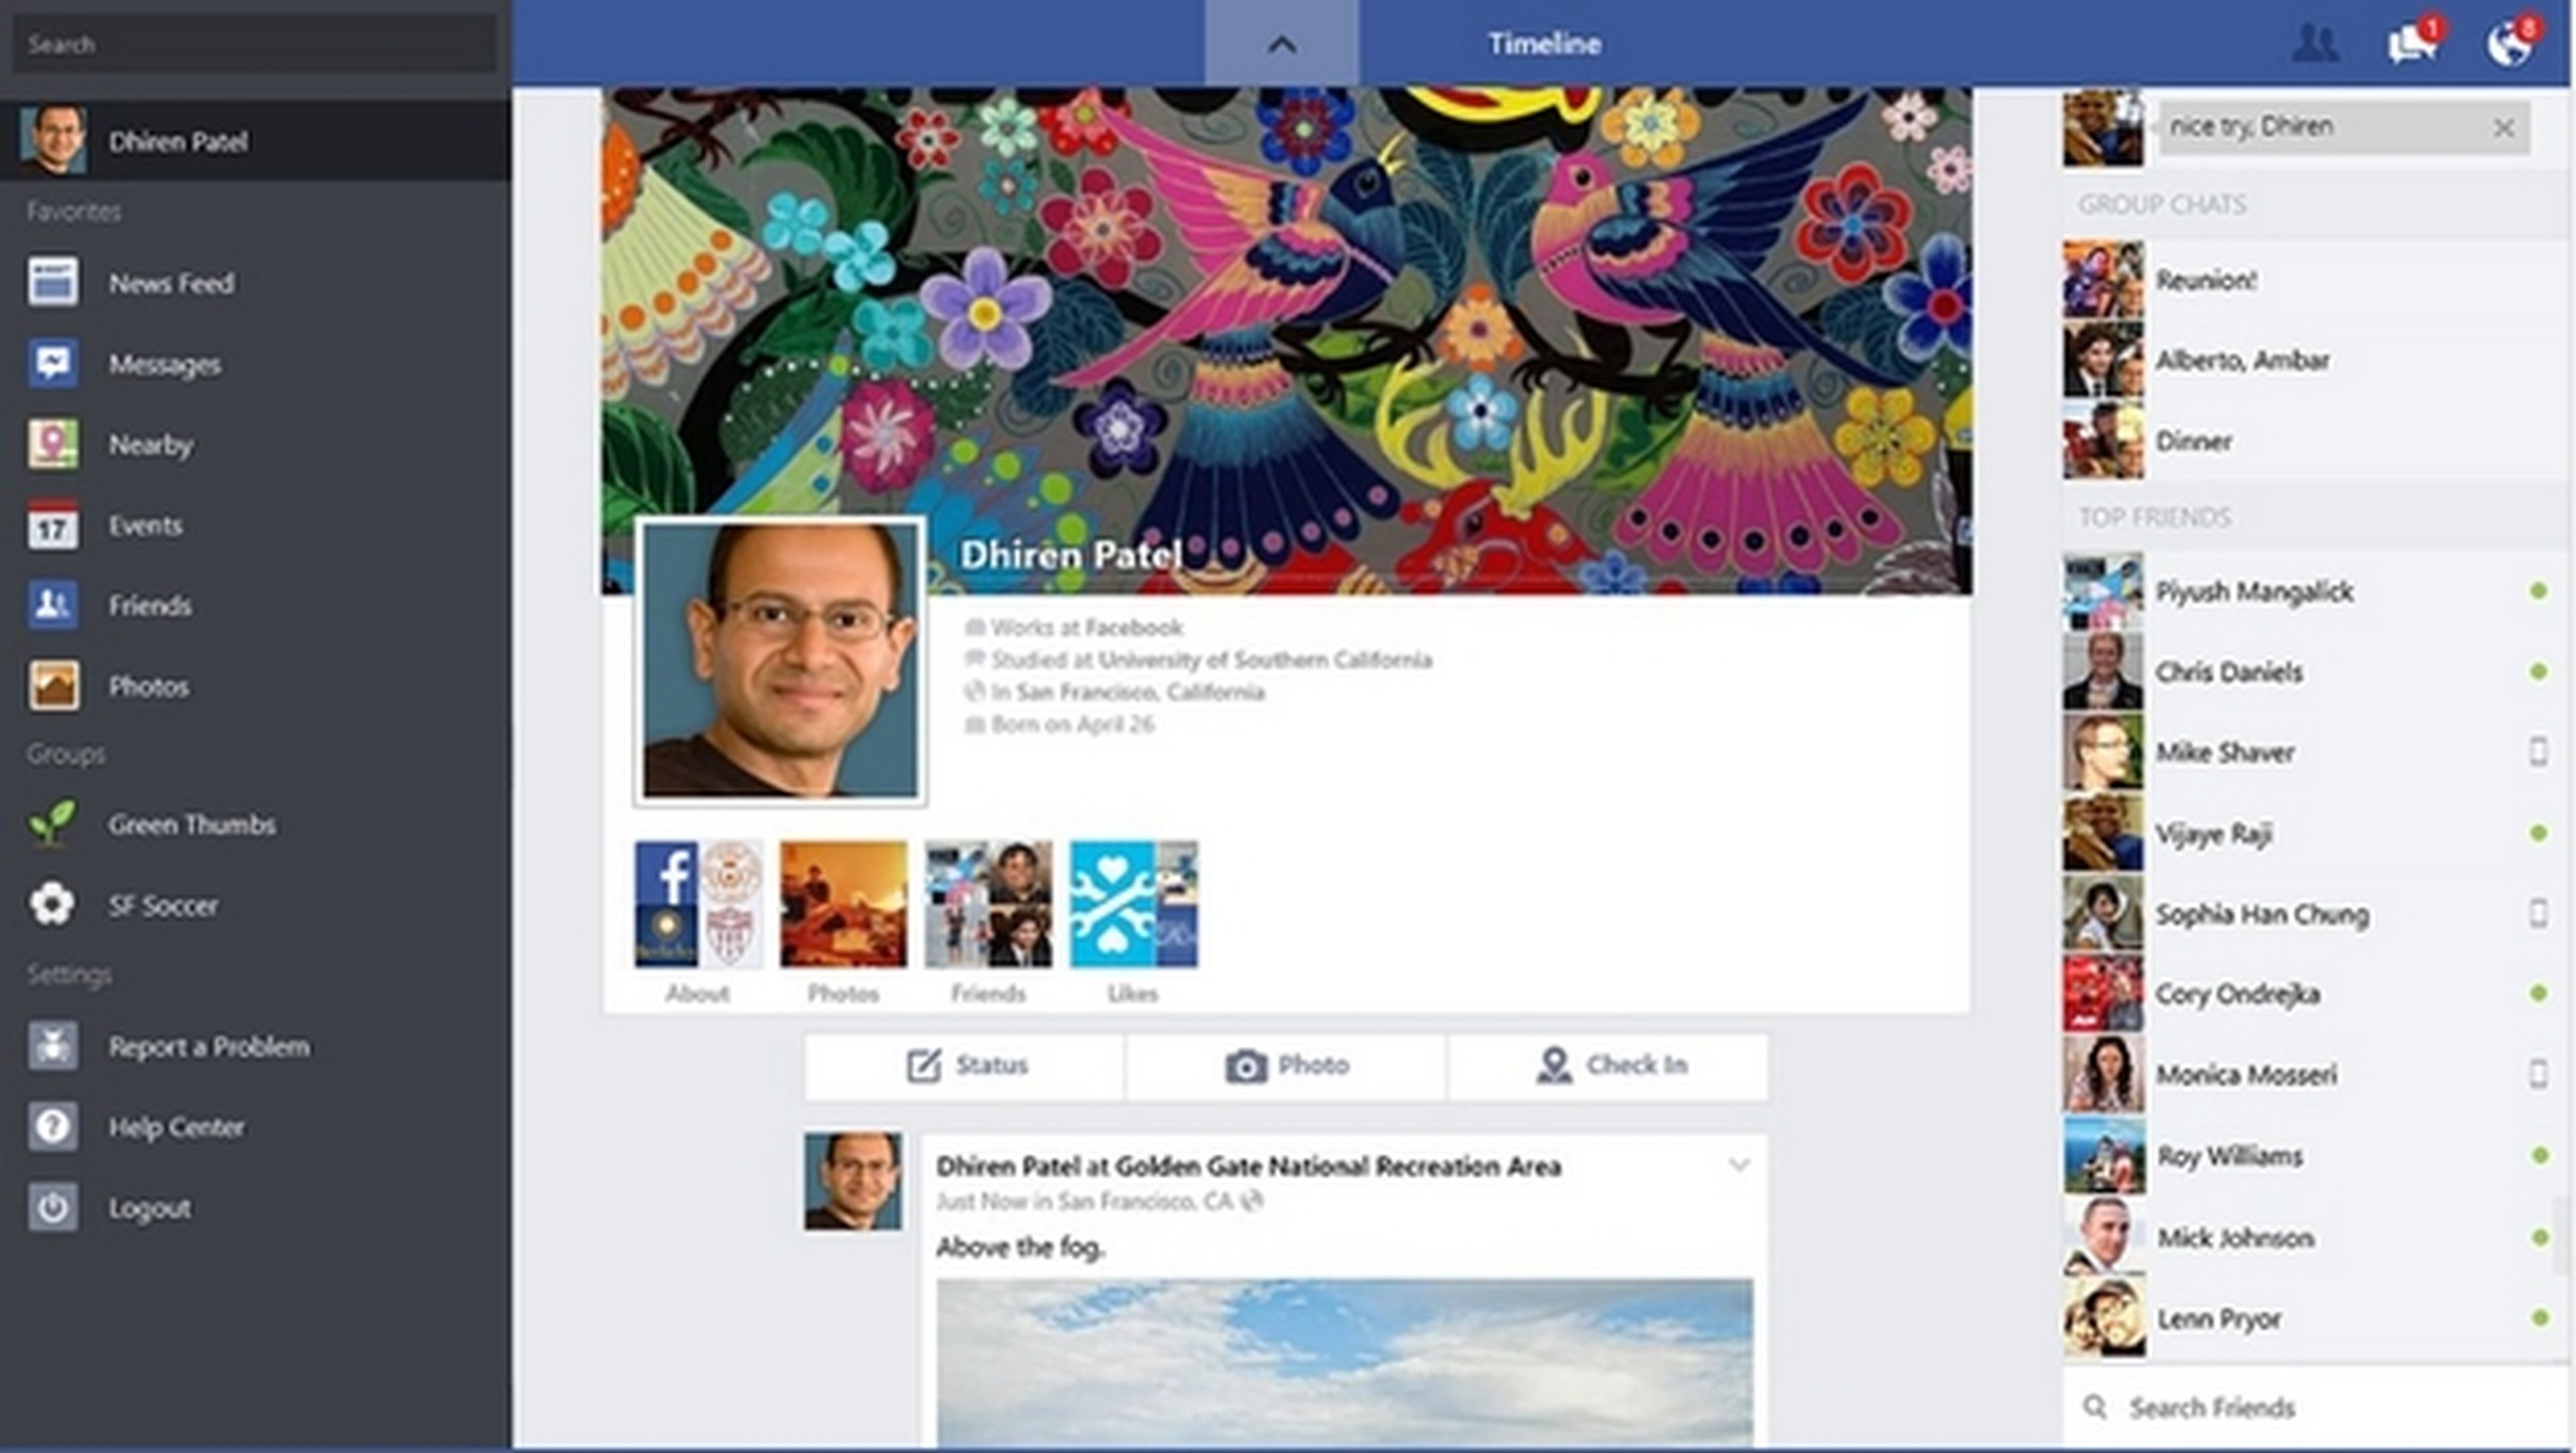 Actualización de Facebook en Windows 8.1, ahora con álbumes de fotos